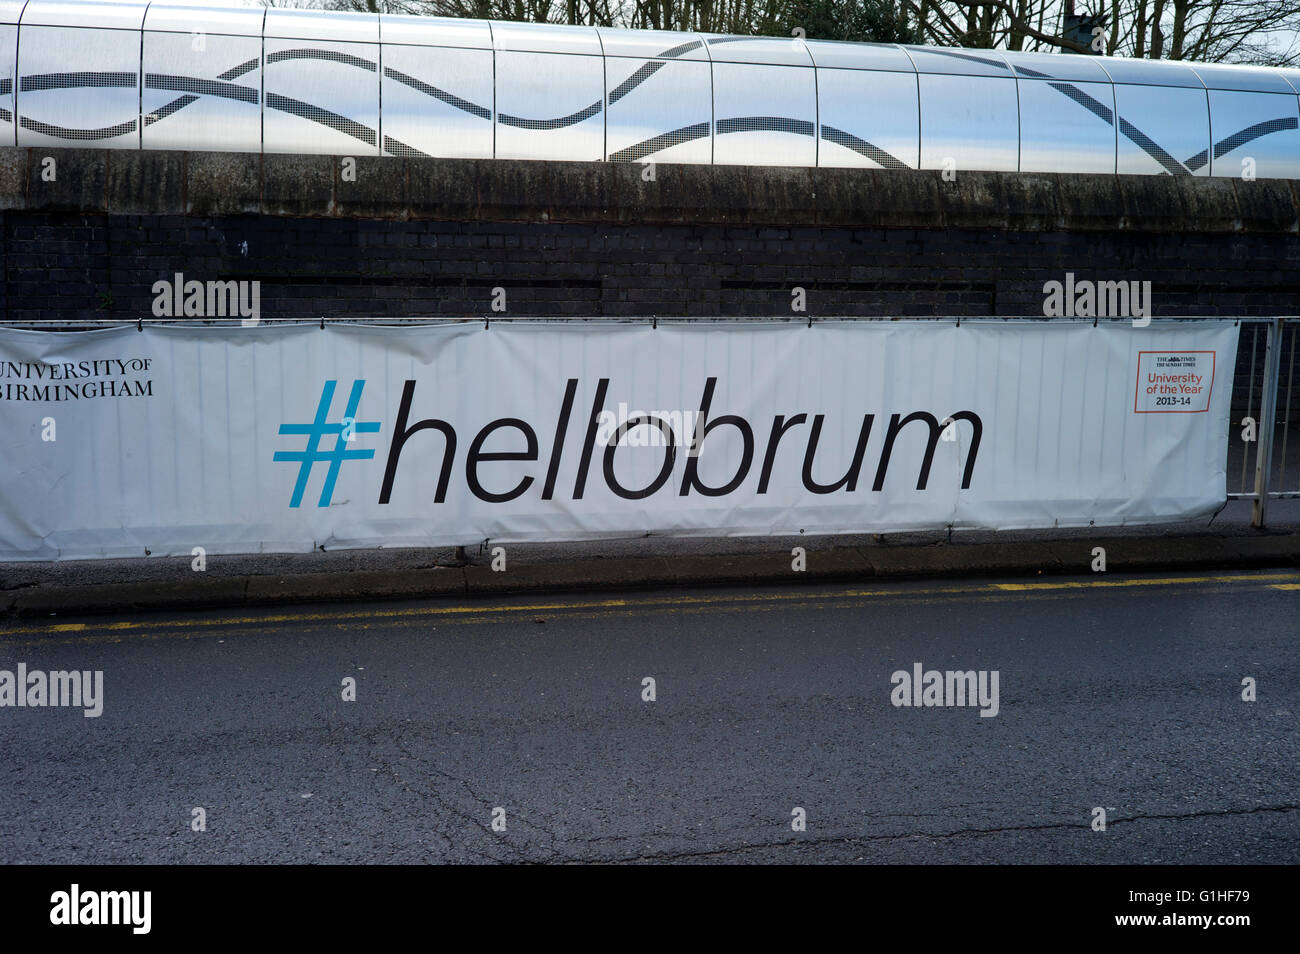 Université de Birmingham twitter hashtag Hellobrum Banque D'Images